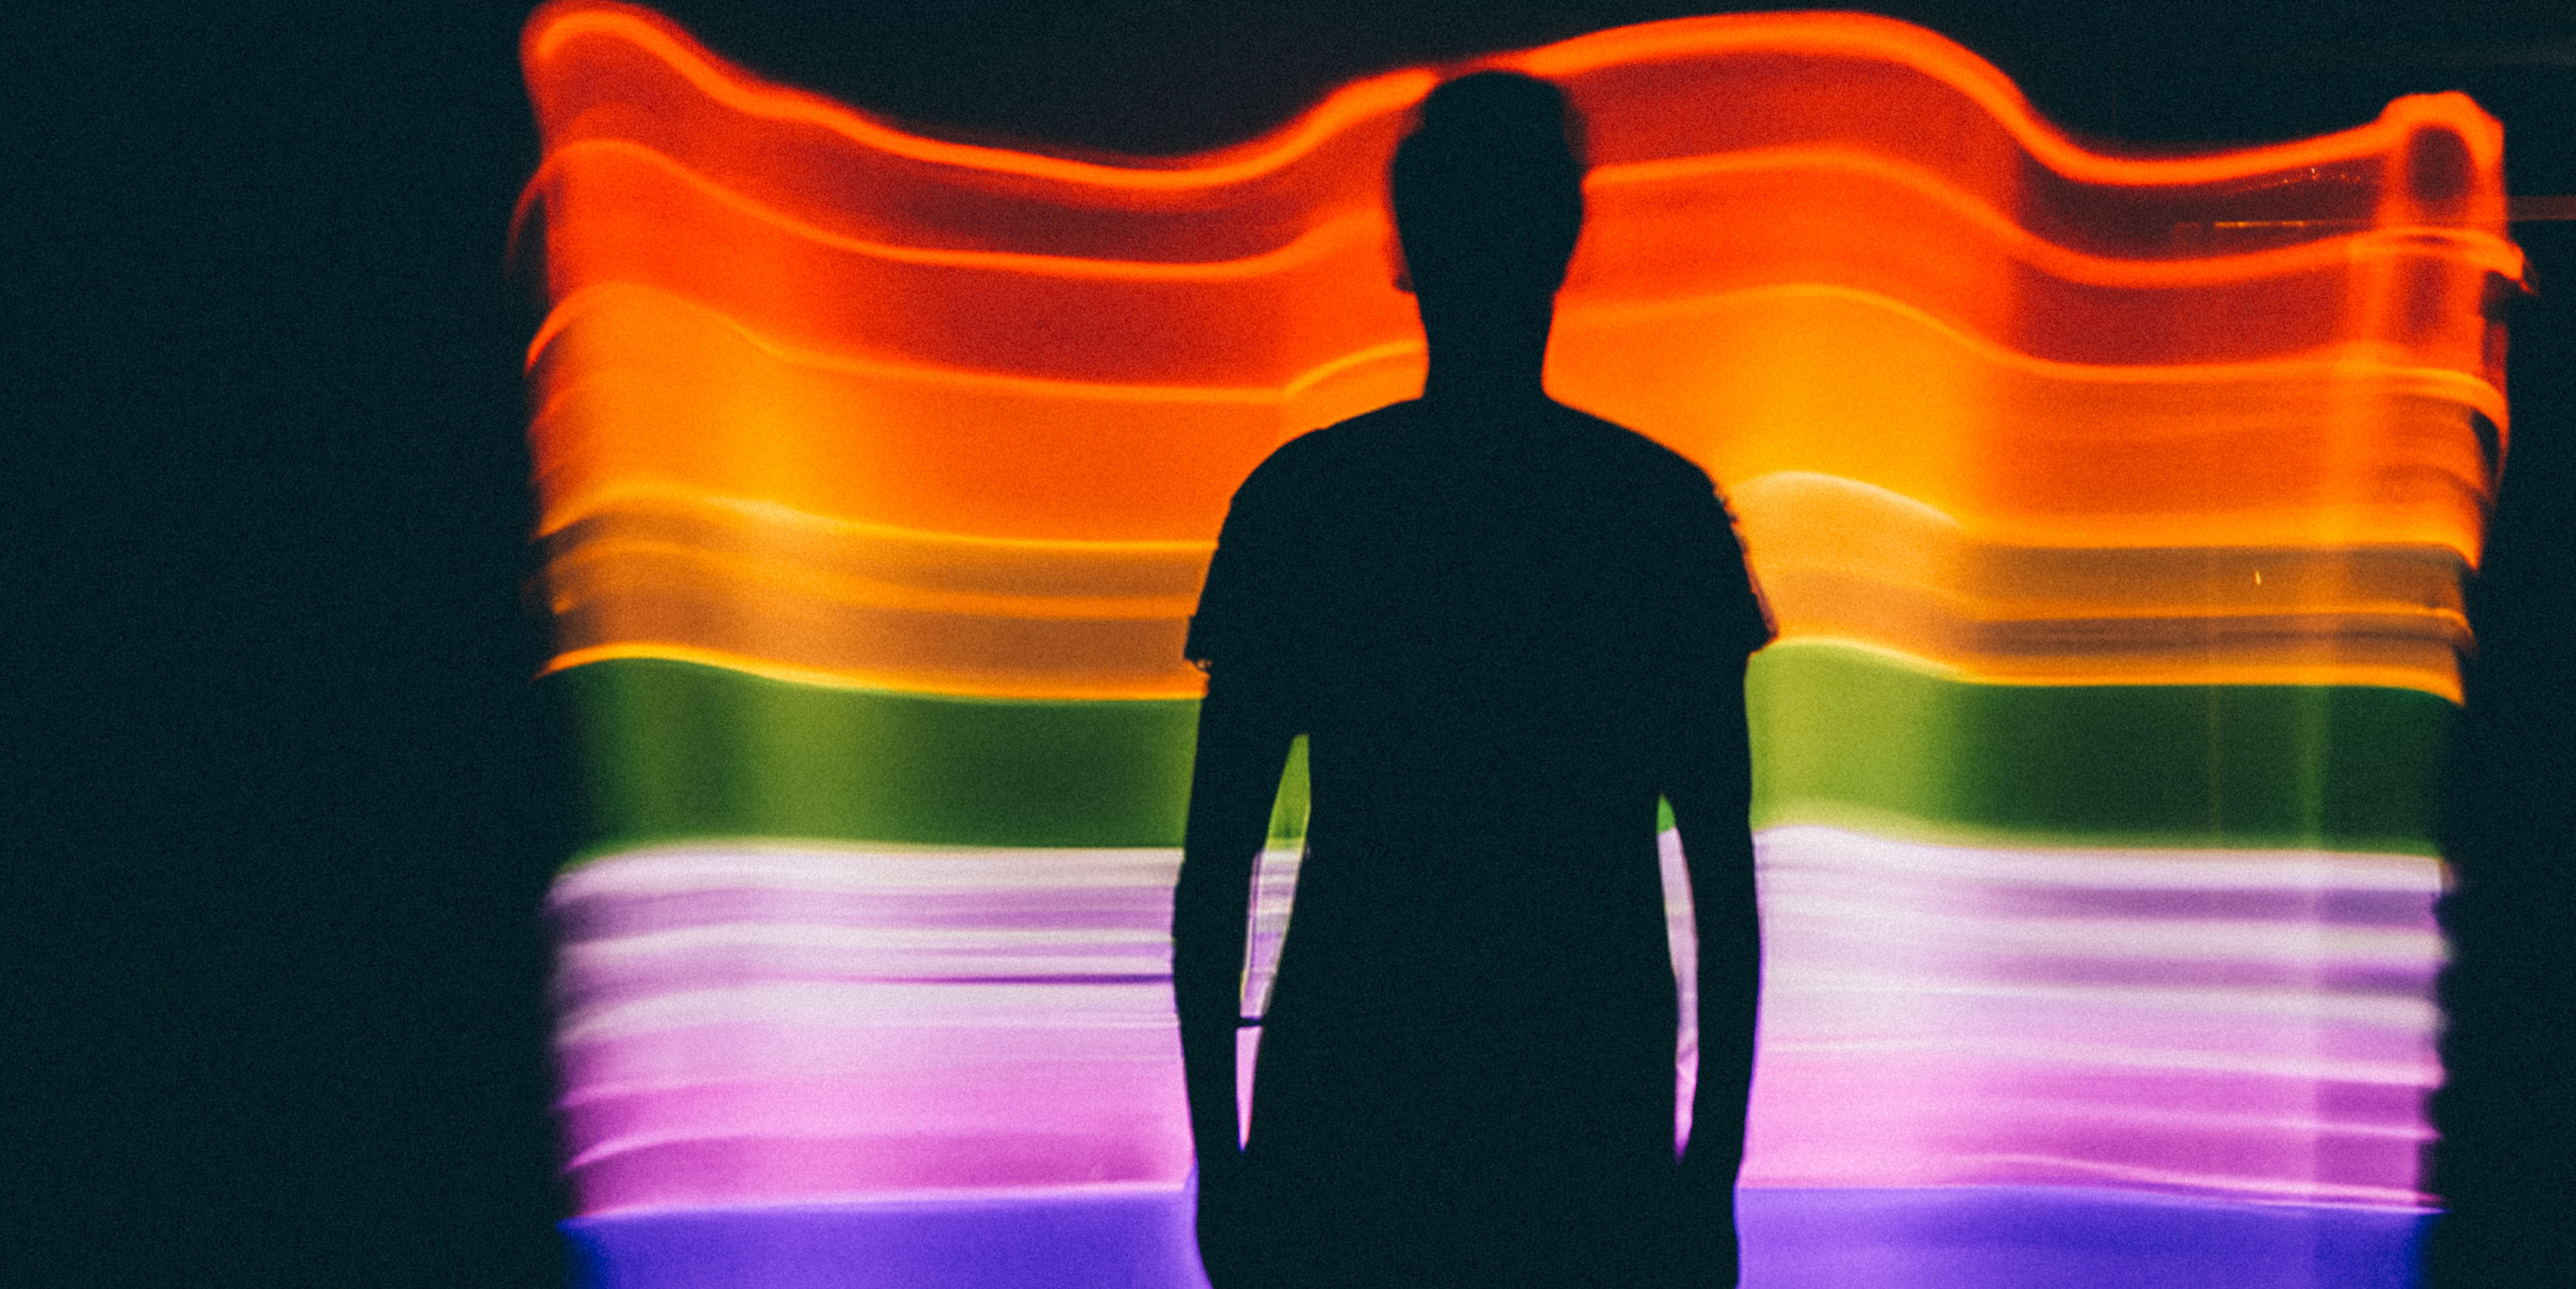 Schatten eines Menschen vor einer Art Regenbogenflagge